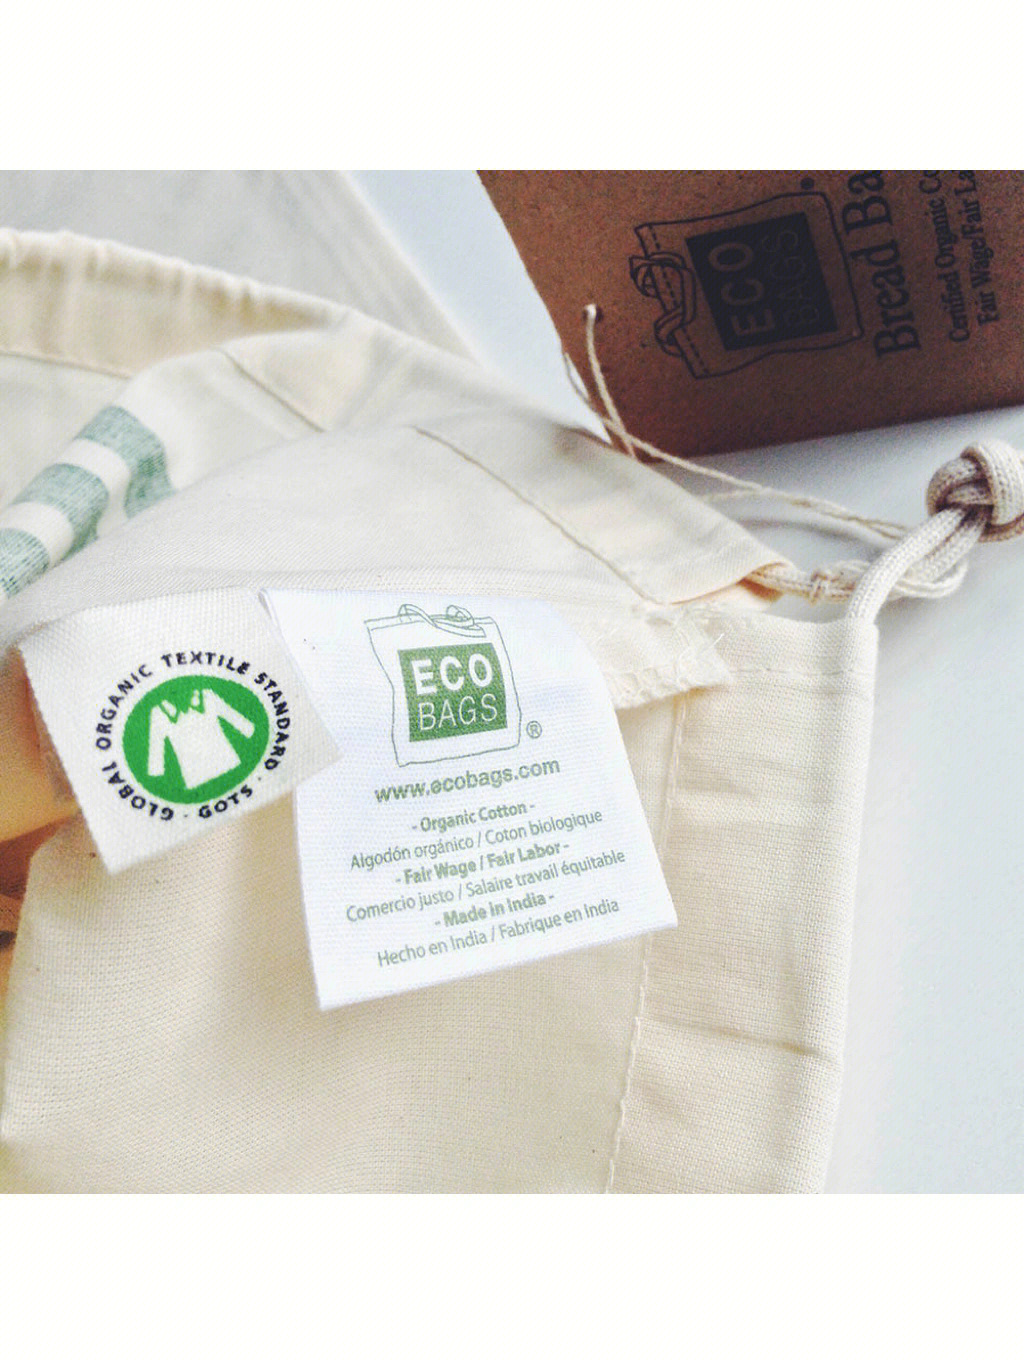 已通过gots的国际认证75157515 全球有机纺织品标准global